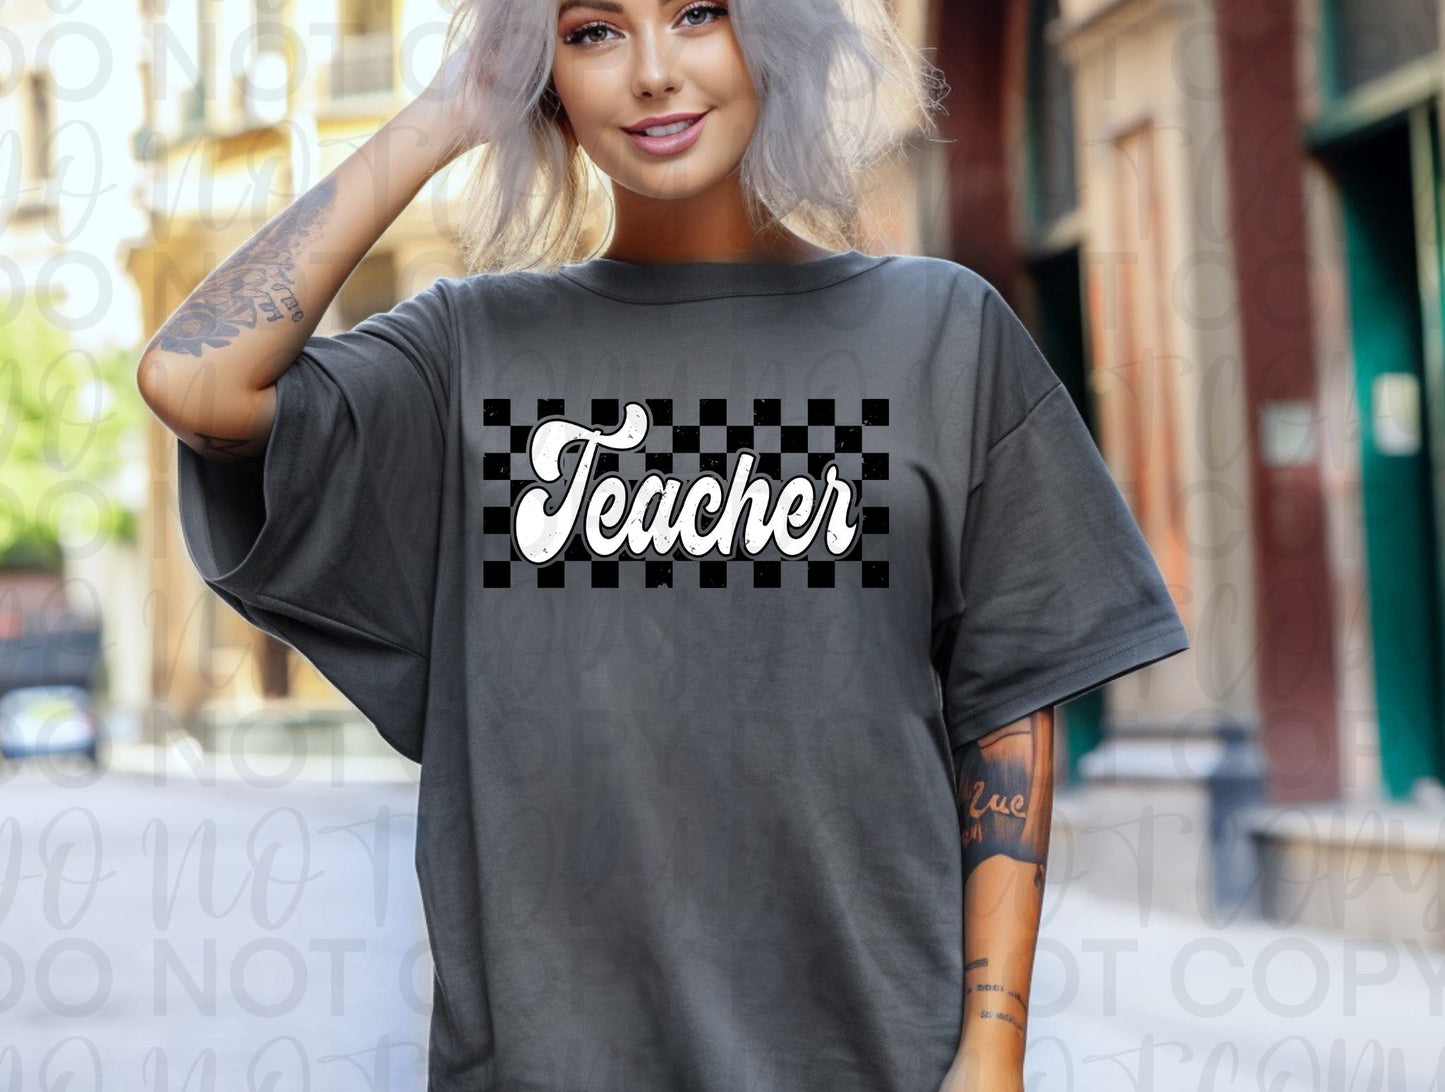 Checkered teacher